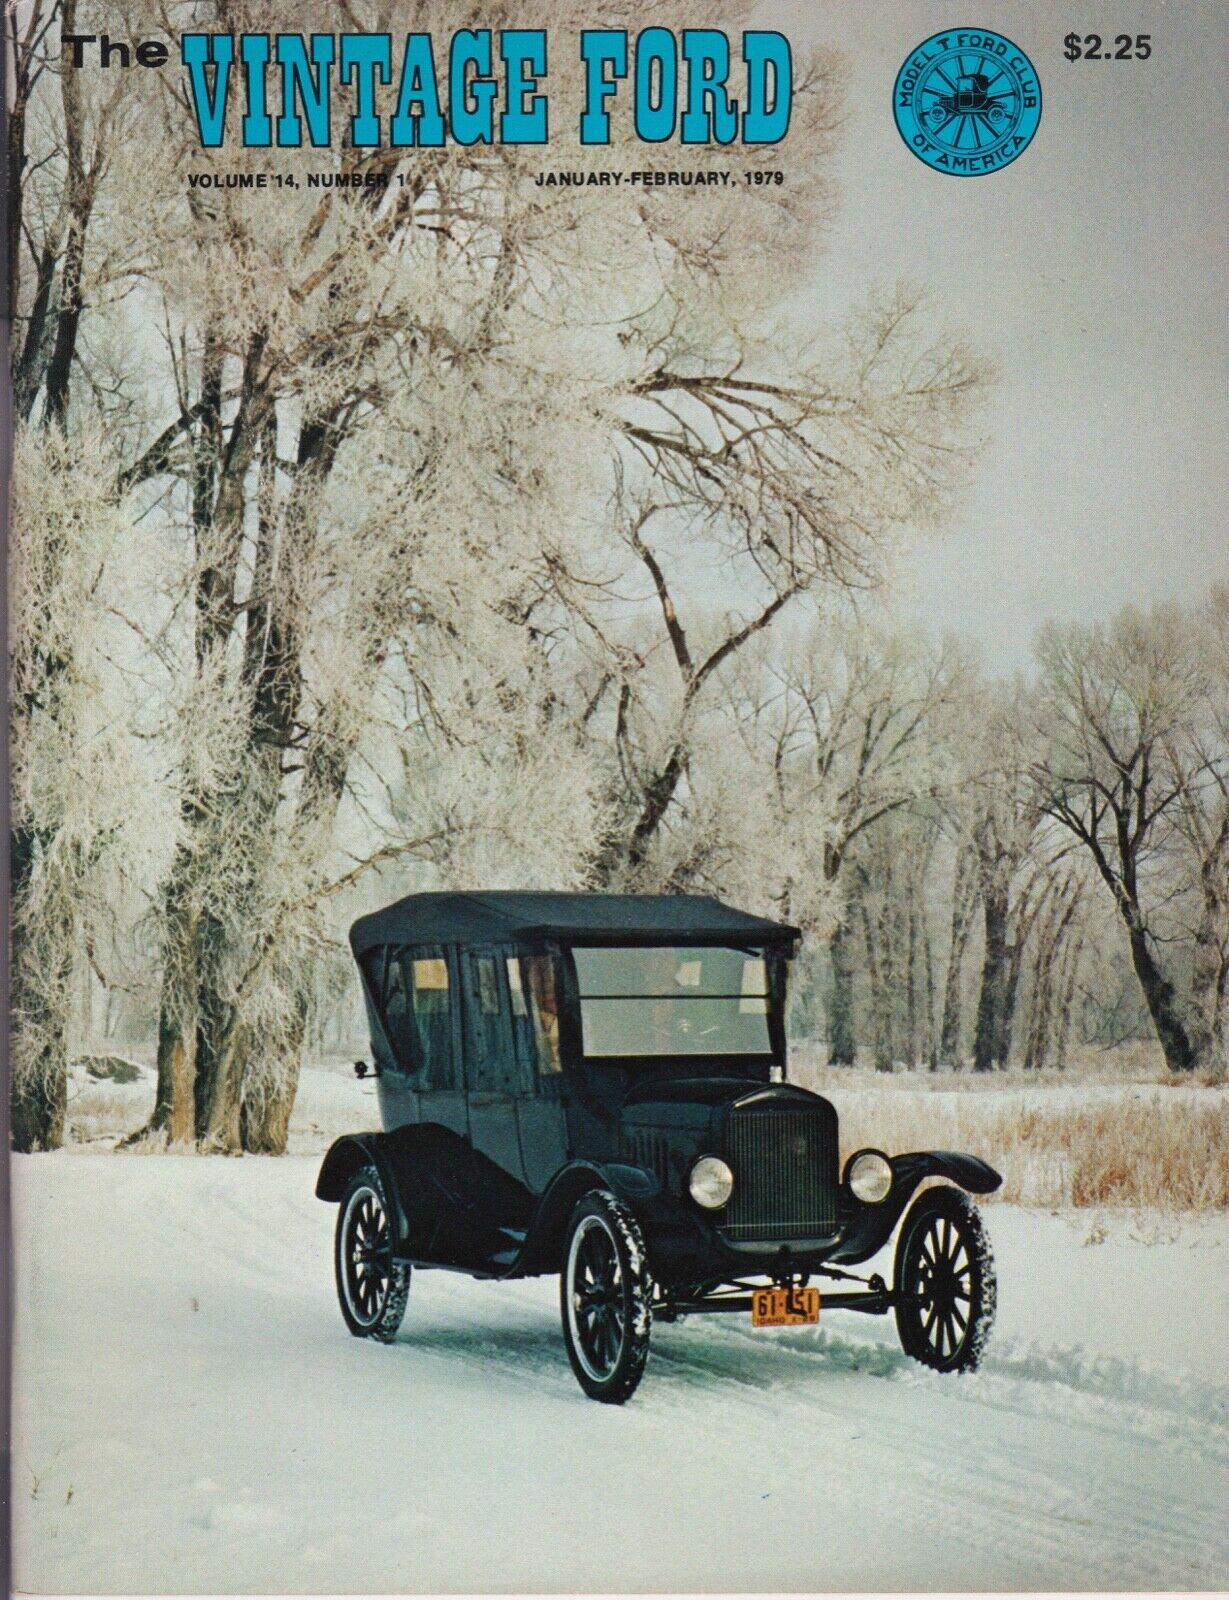 1924 TOURING CAR - THE VINTAGE FORD 1979 MAGAZINE - REXBURG, IDAHO